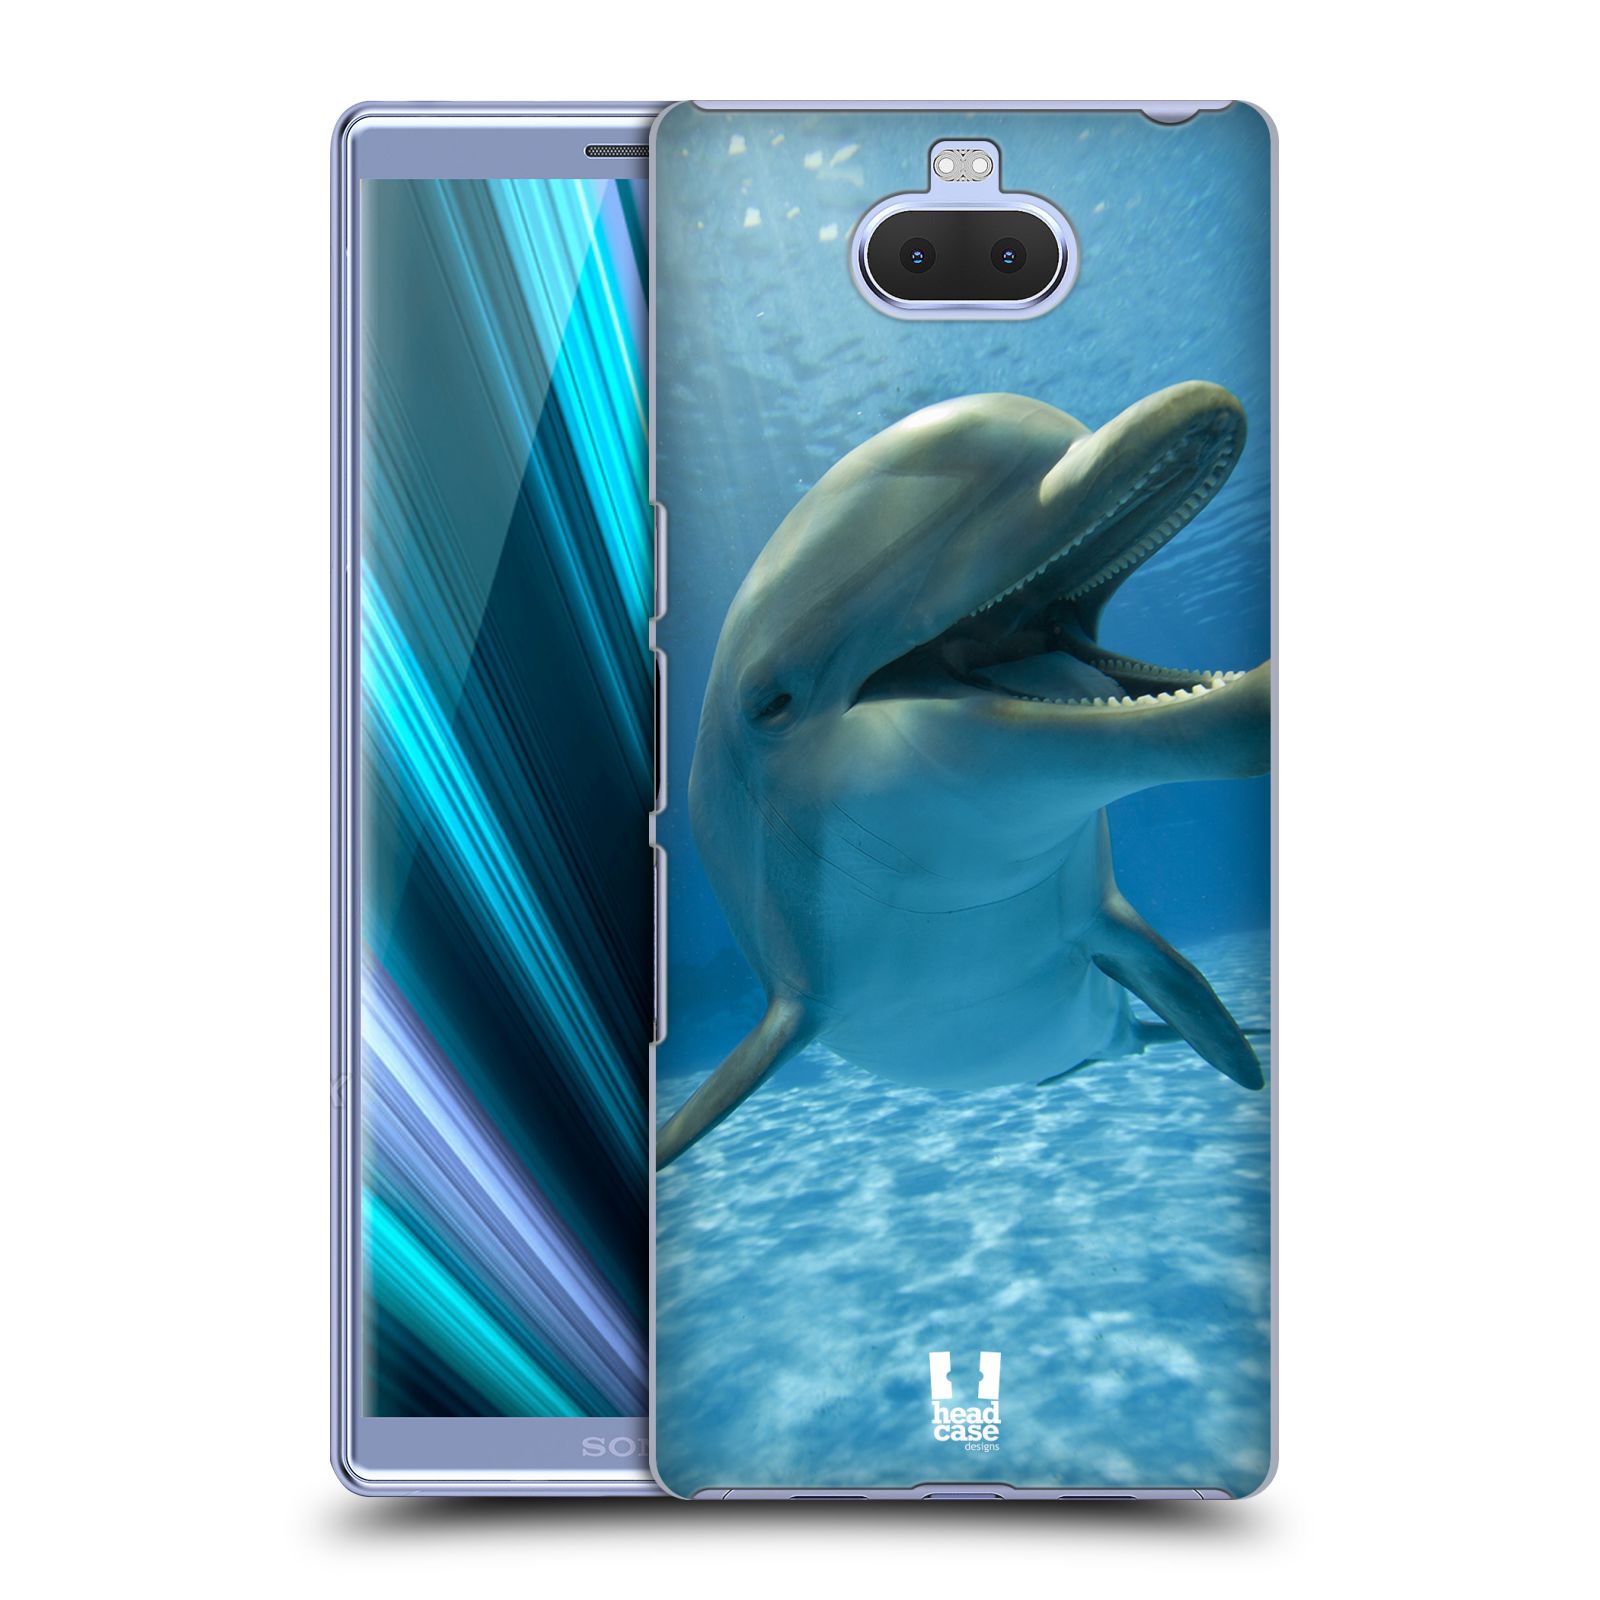 Zadní obal pro mobil Sony Xperia 10 - HEAD CASE - Svět zvířat delfín v moři